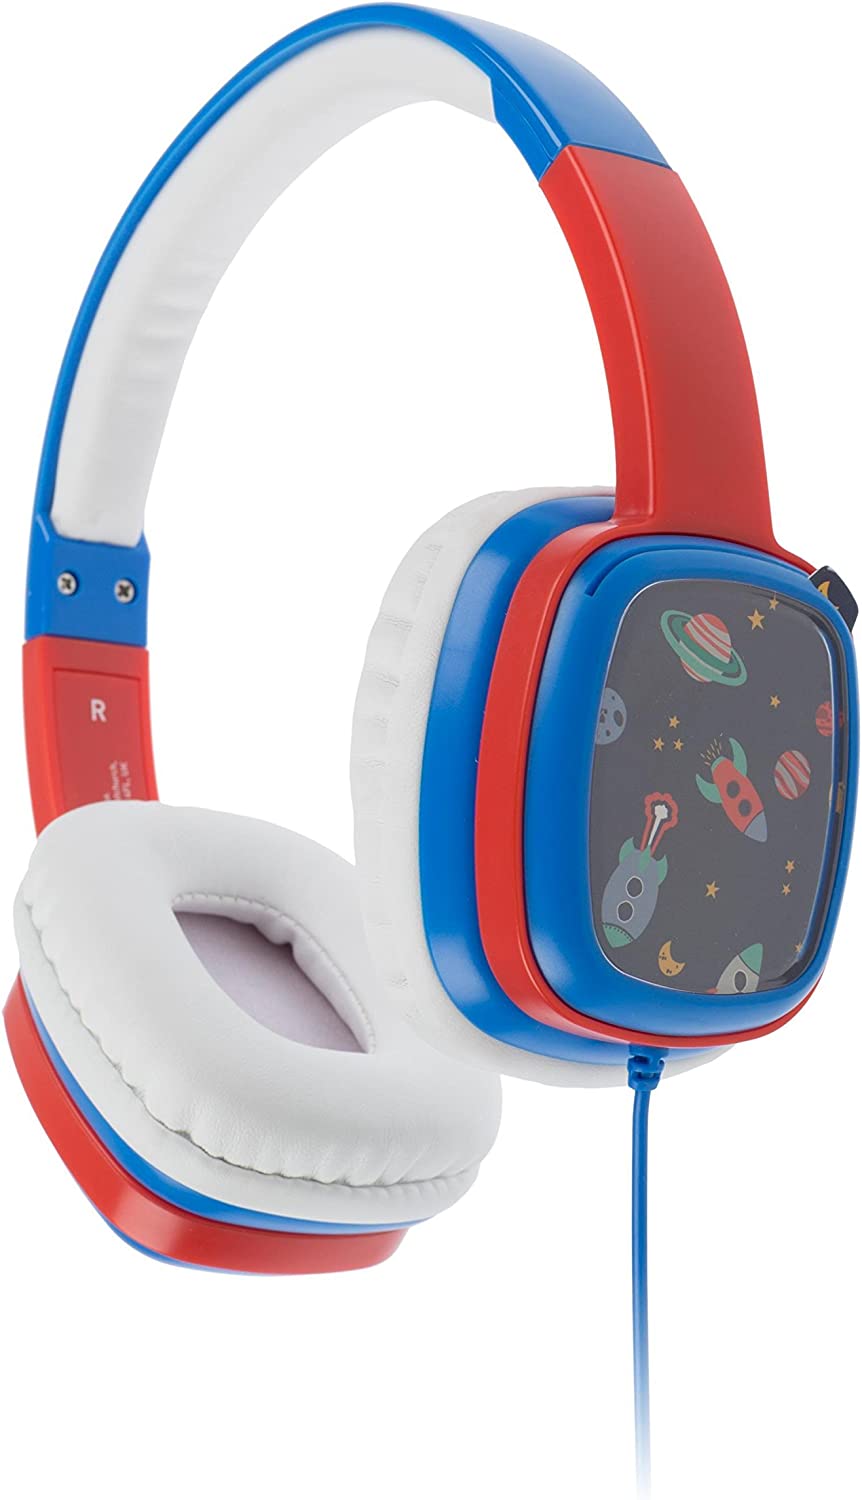 Kitsound KSMMBL Childern's Noise-Canceling Over-Ear Headphones, Blue